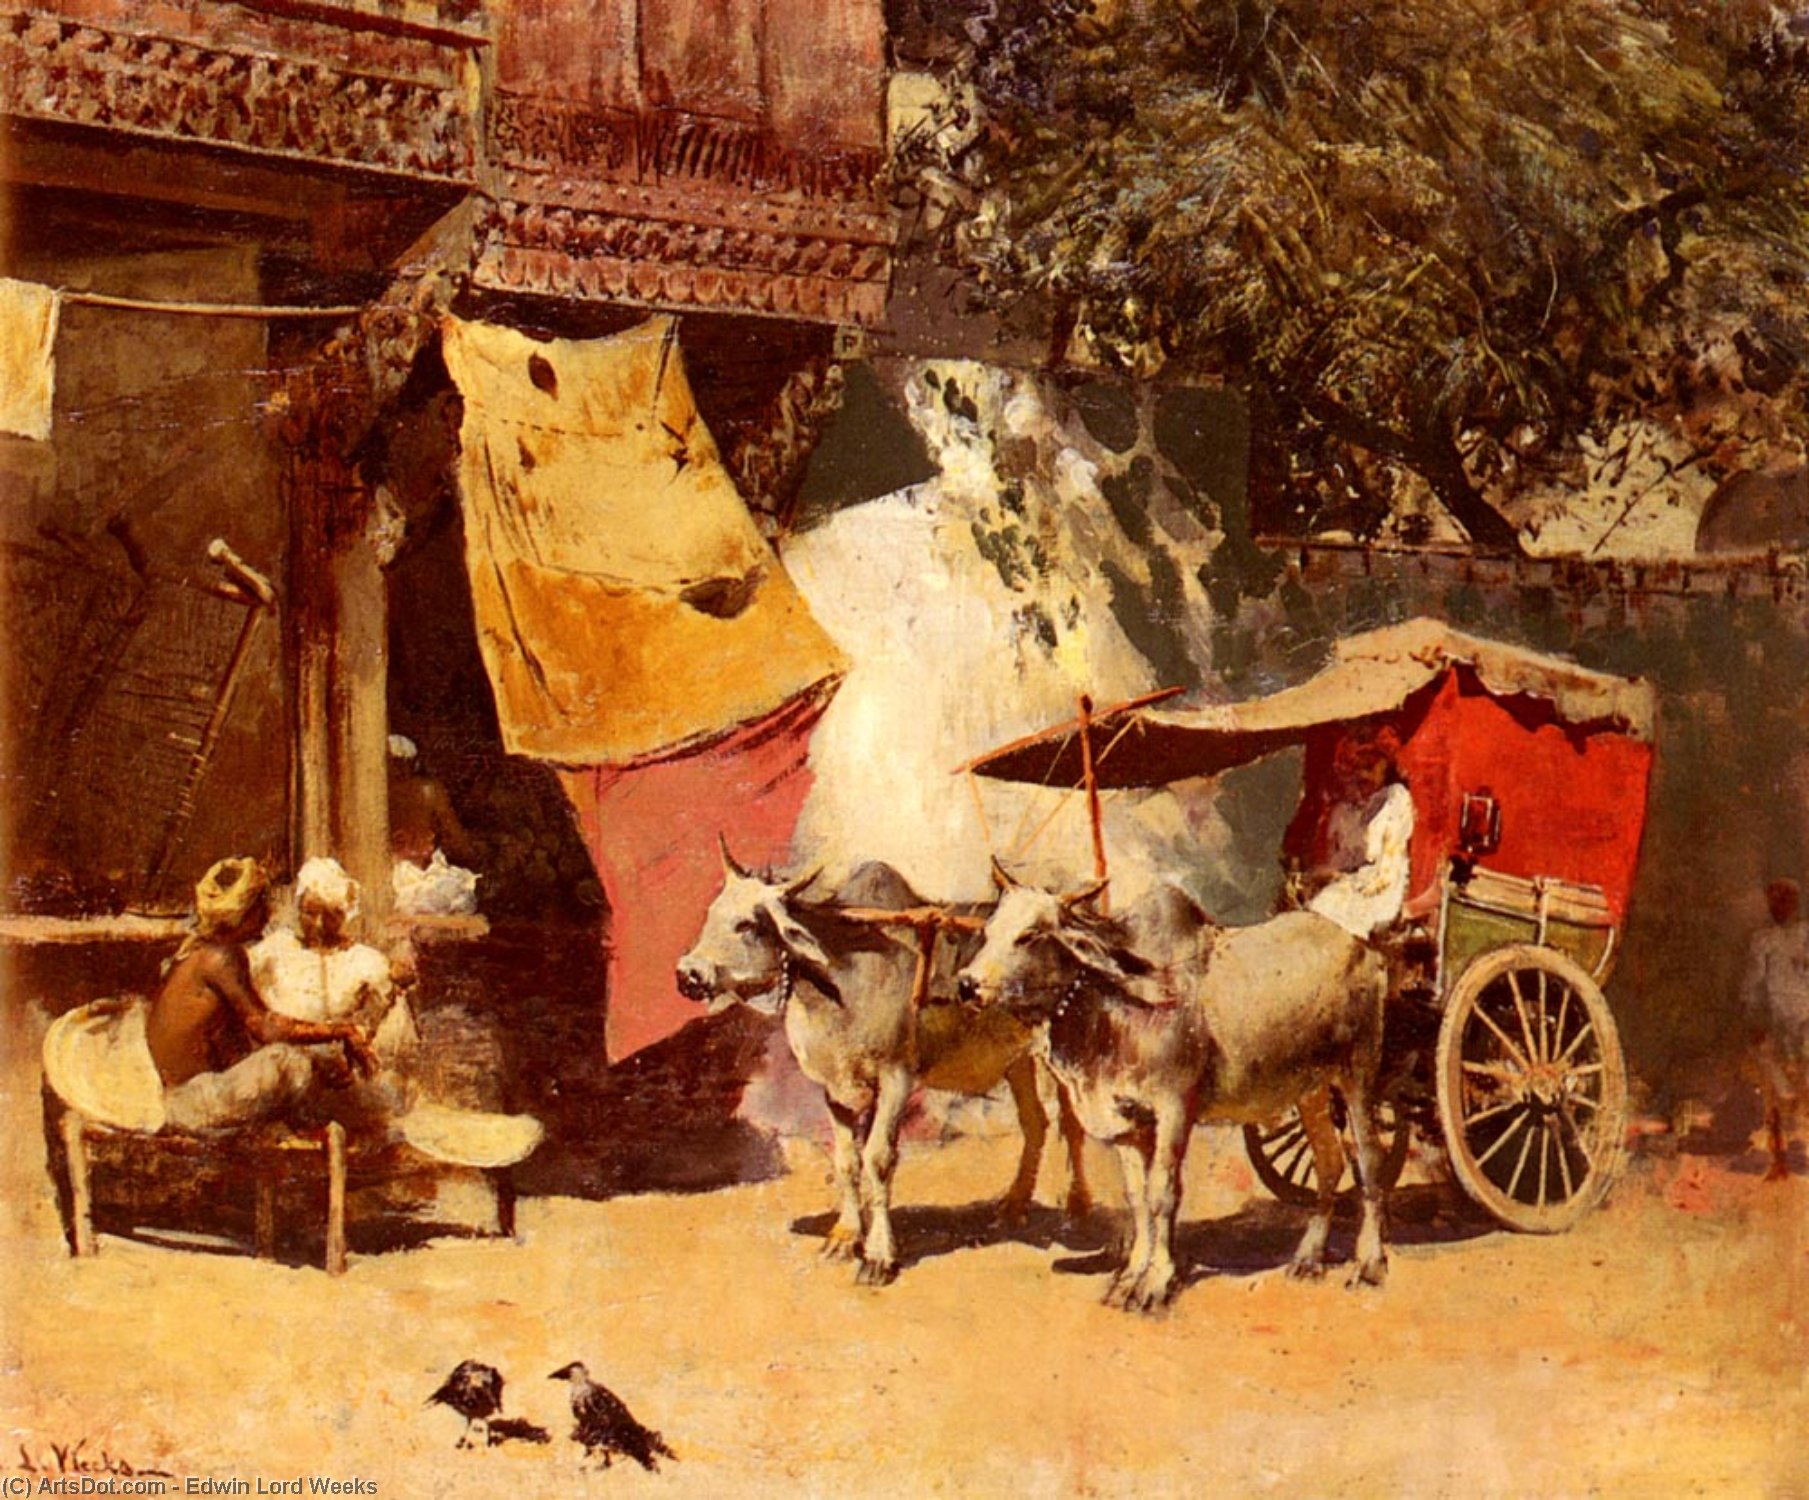 WikiOO.org - Encyclopedia of Fine Arts - Lukisan, Artwork Edwin Lord Weeks - An Indian Gharry